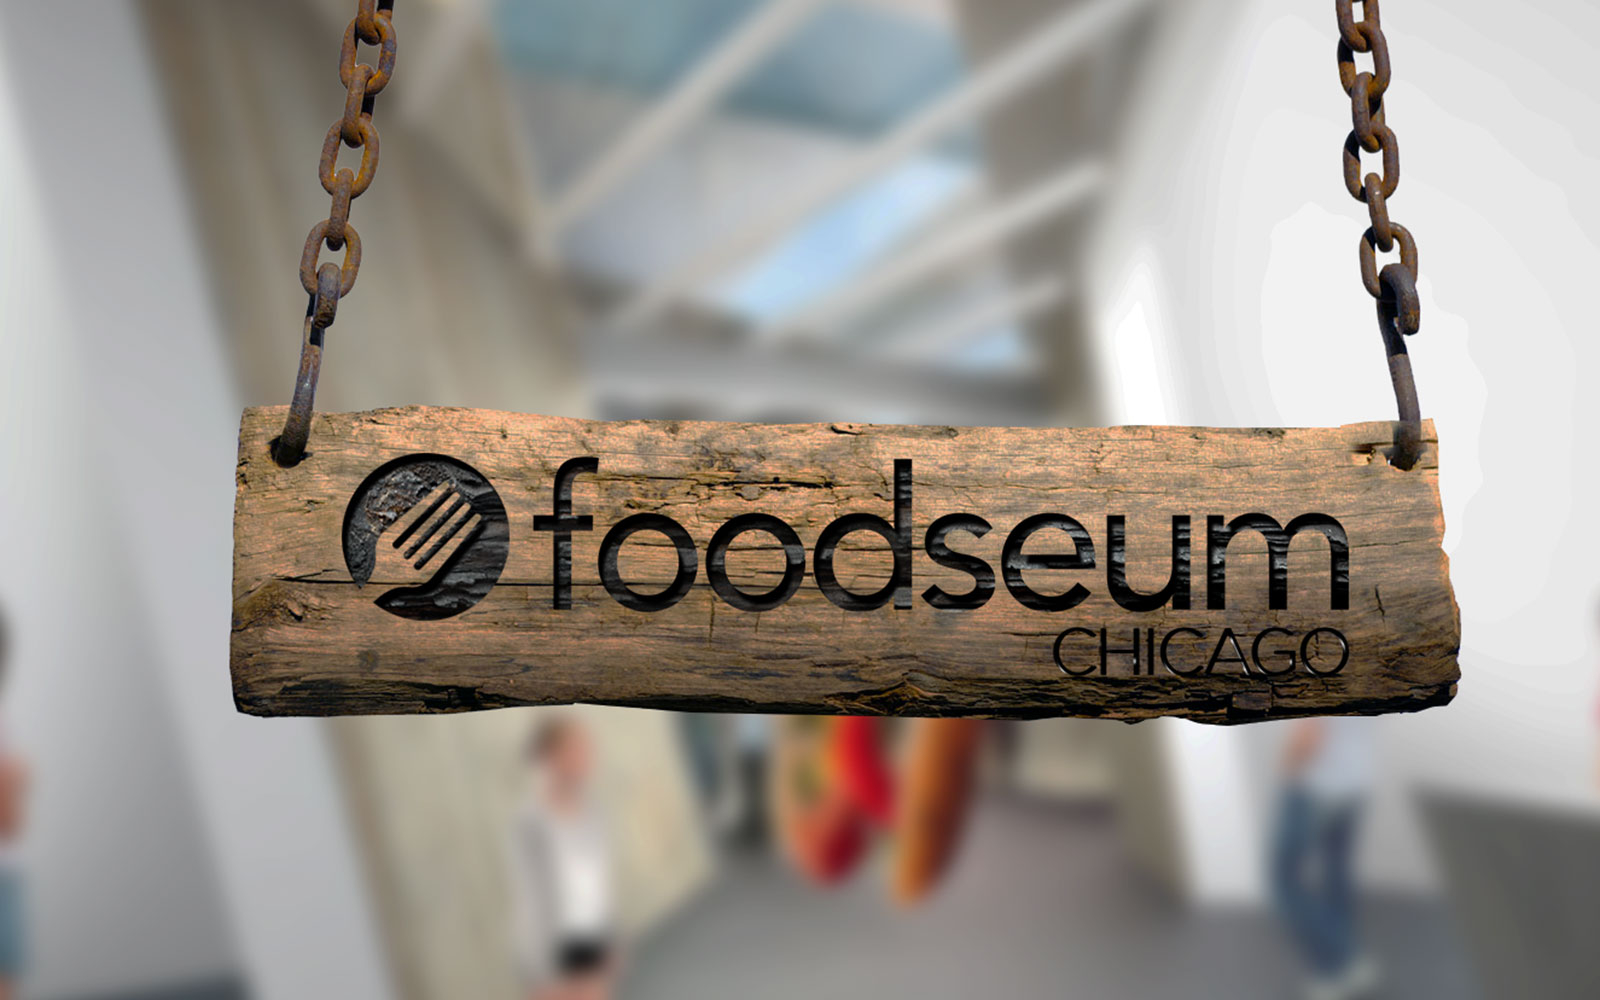 Chicago's Foodseum Has Found a Temporary Home